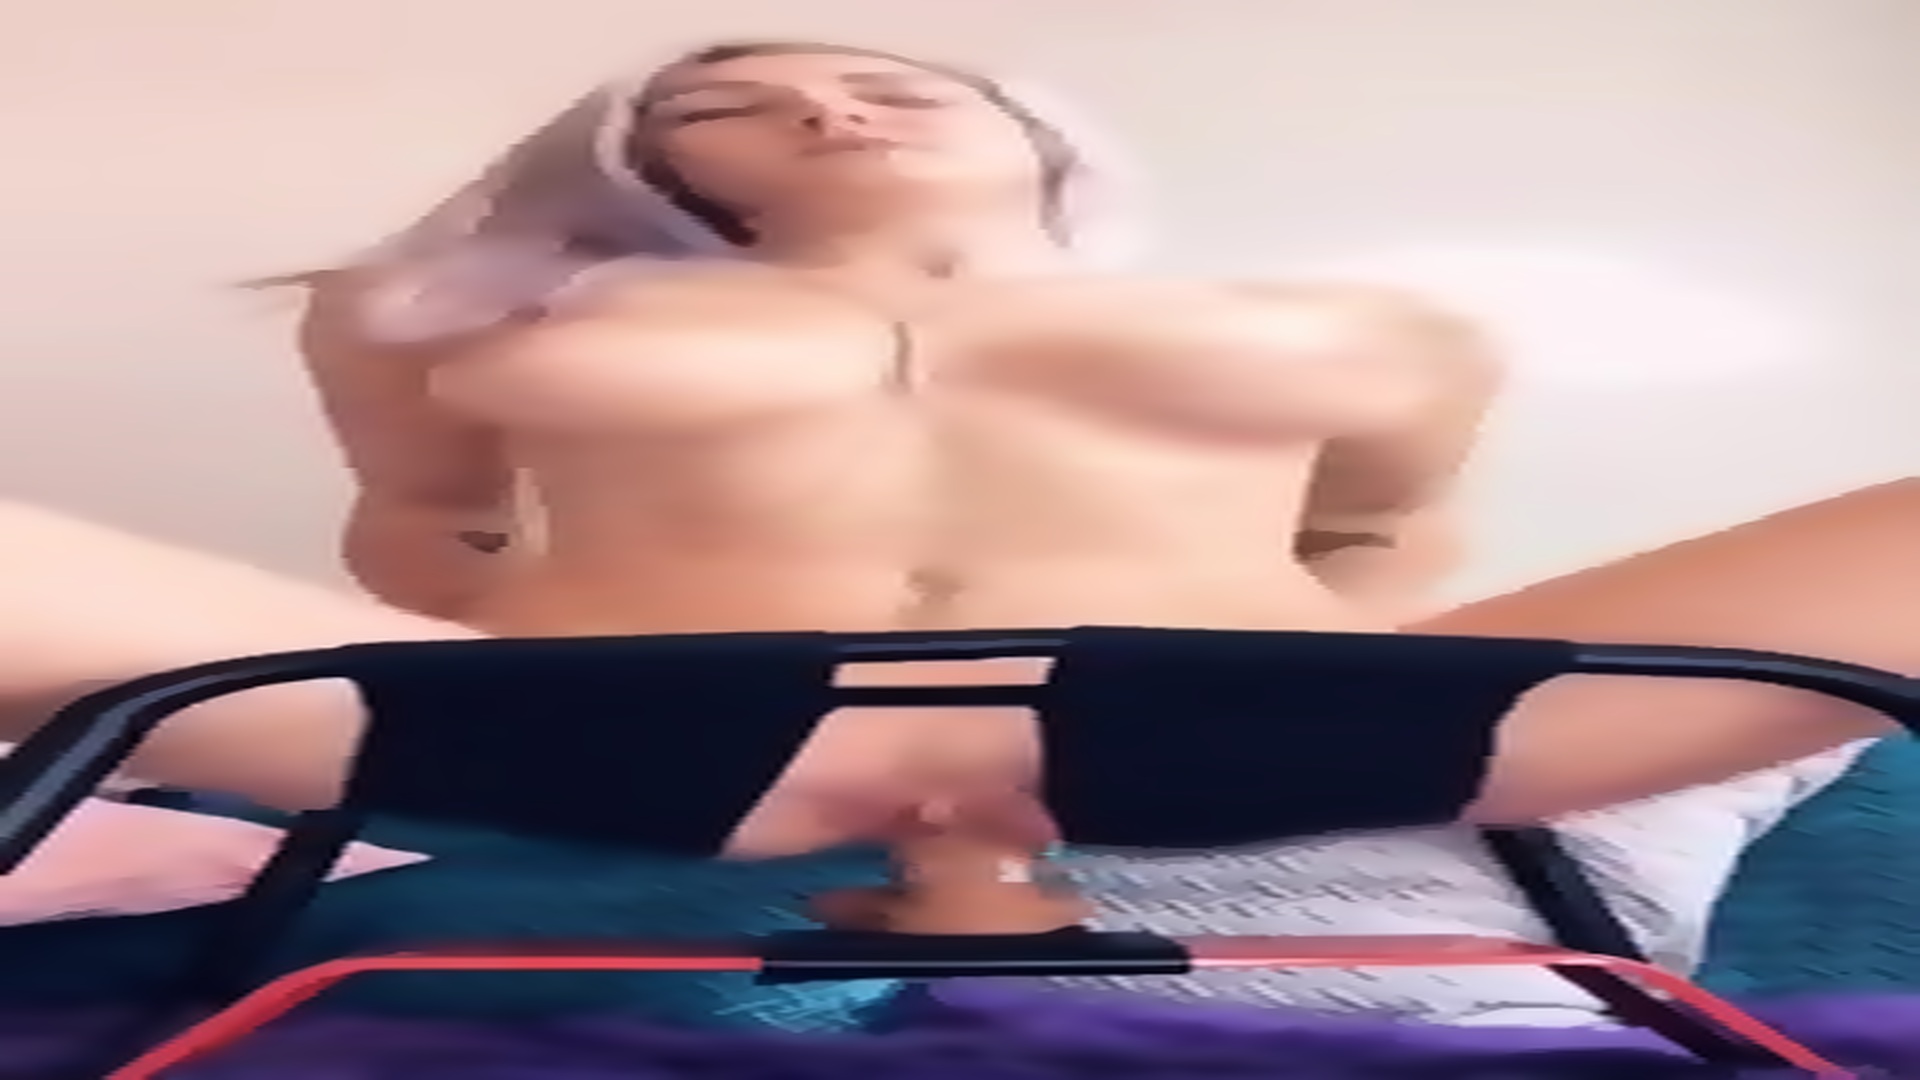 scene girlfriend humps mounted dildo Porn Pics Hd